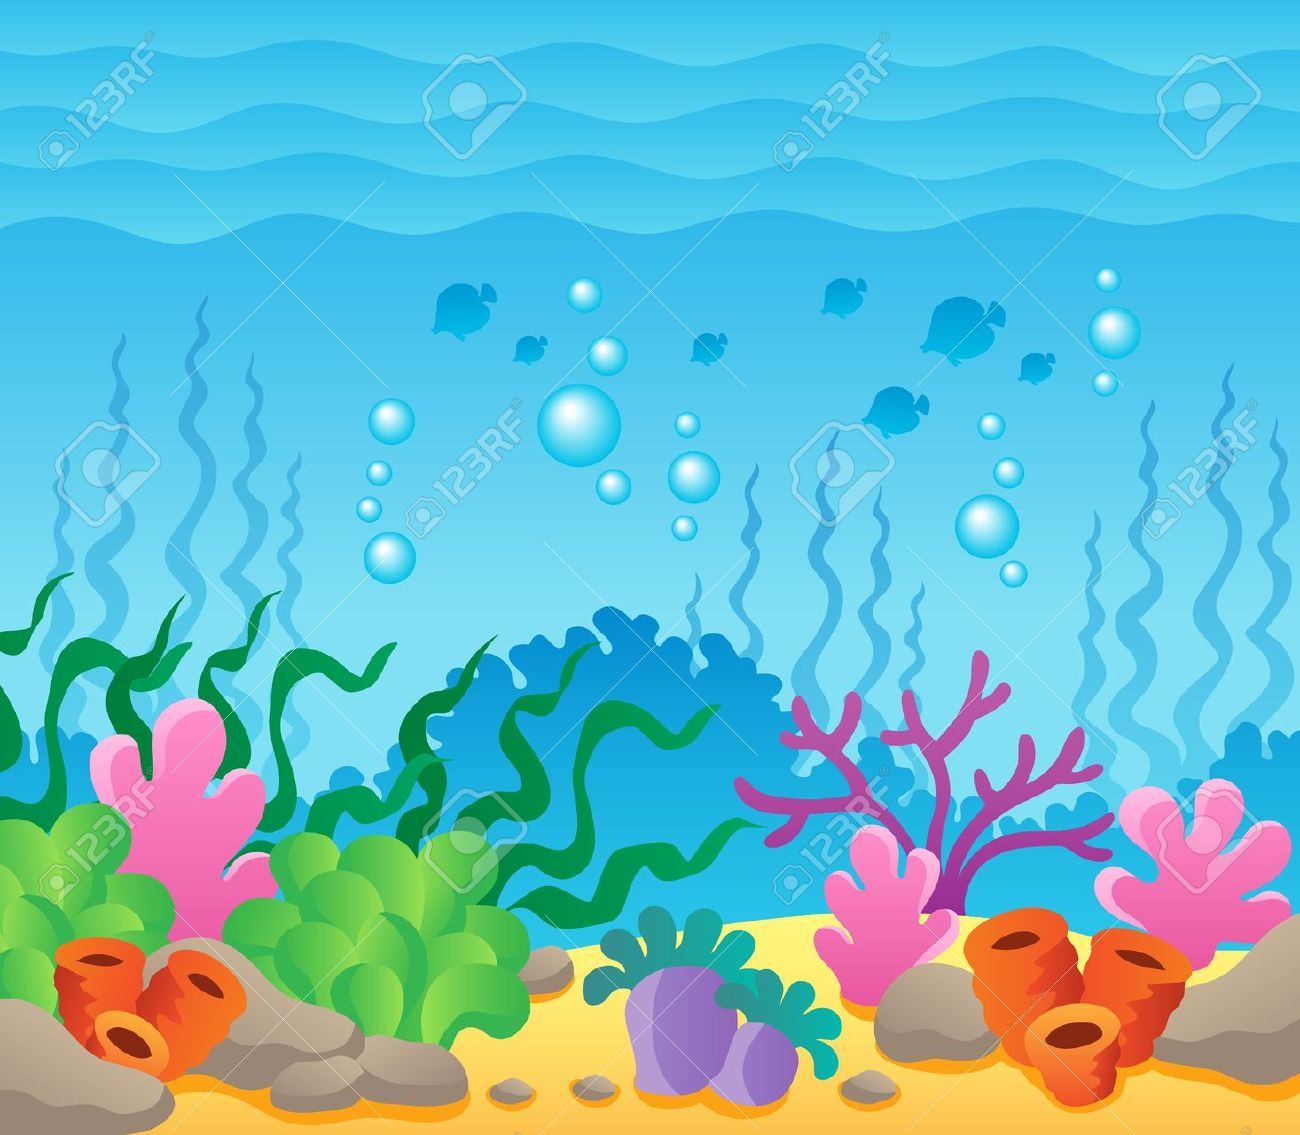 Undersea art projects for kids